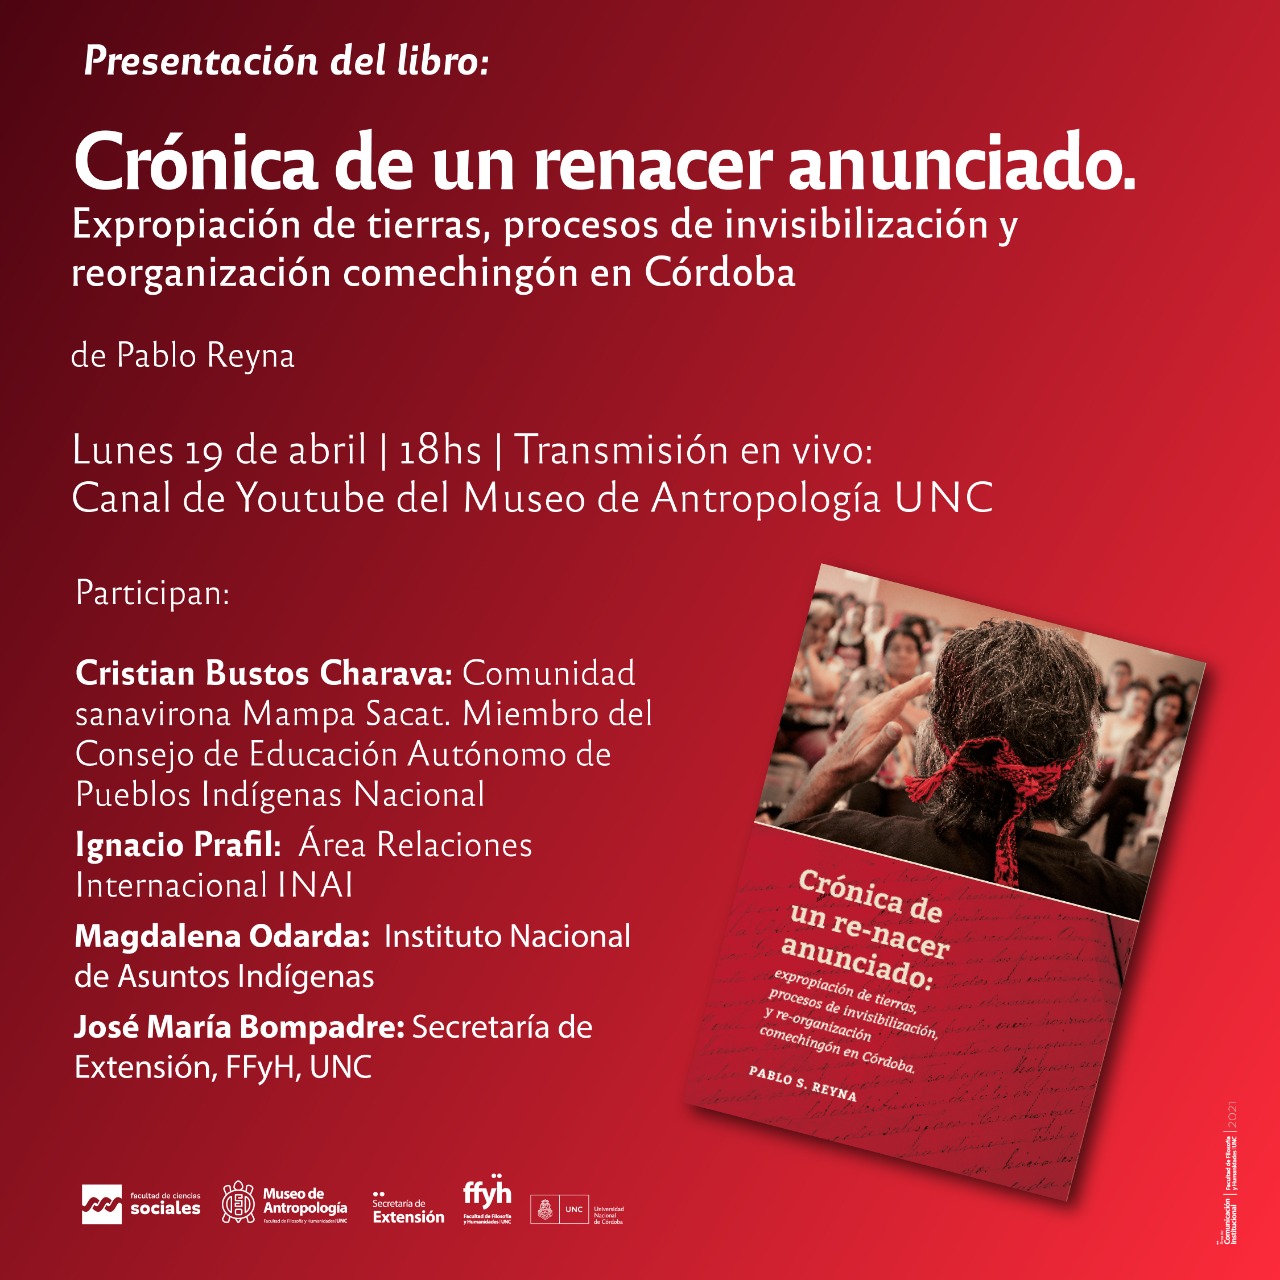 Presentación del libro “Crónica de un renacer anunciado. Expropiación de tierras, procesos de invisibilización y reorganización comechingón en Córdoba”